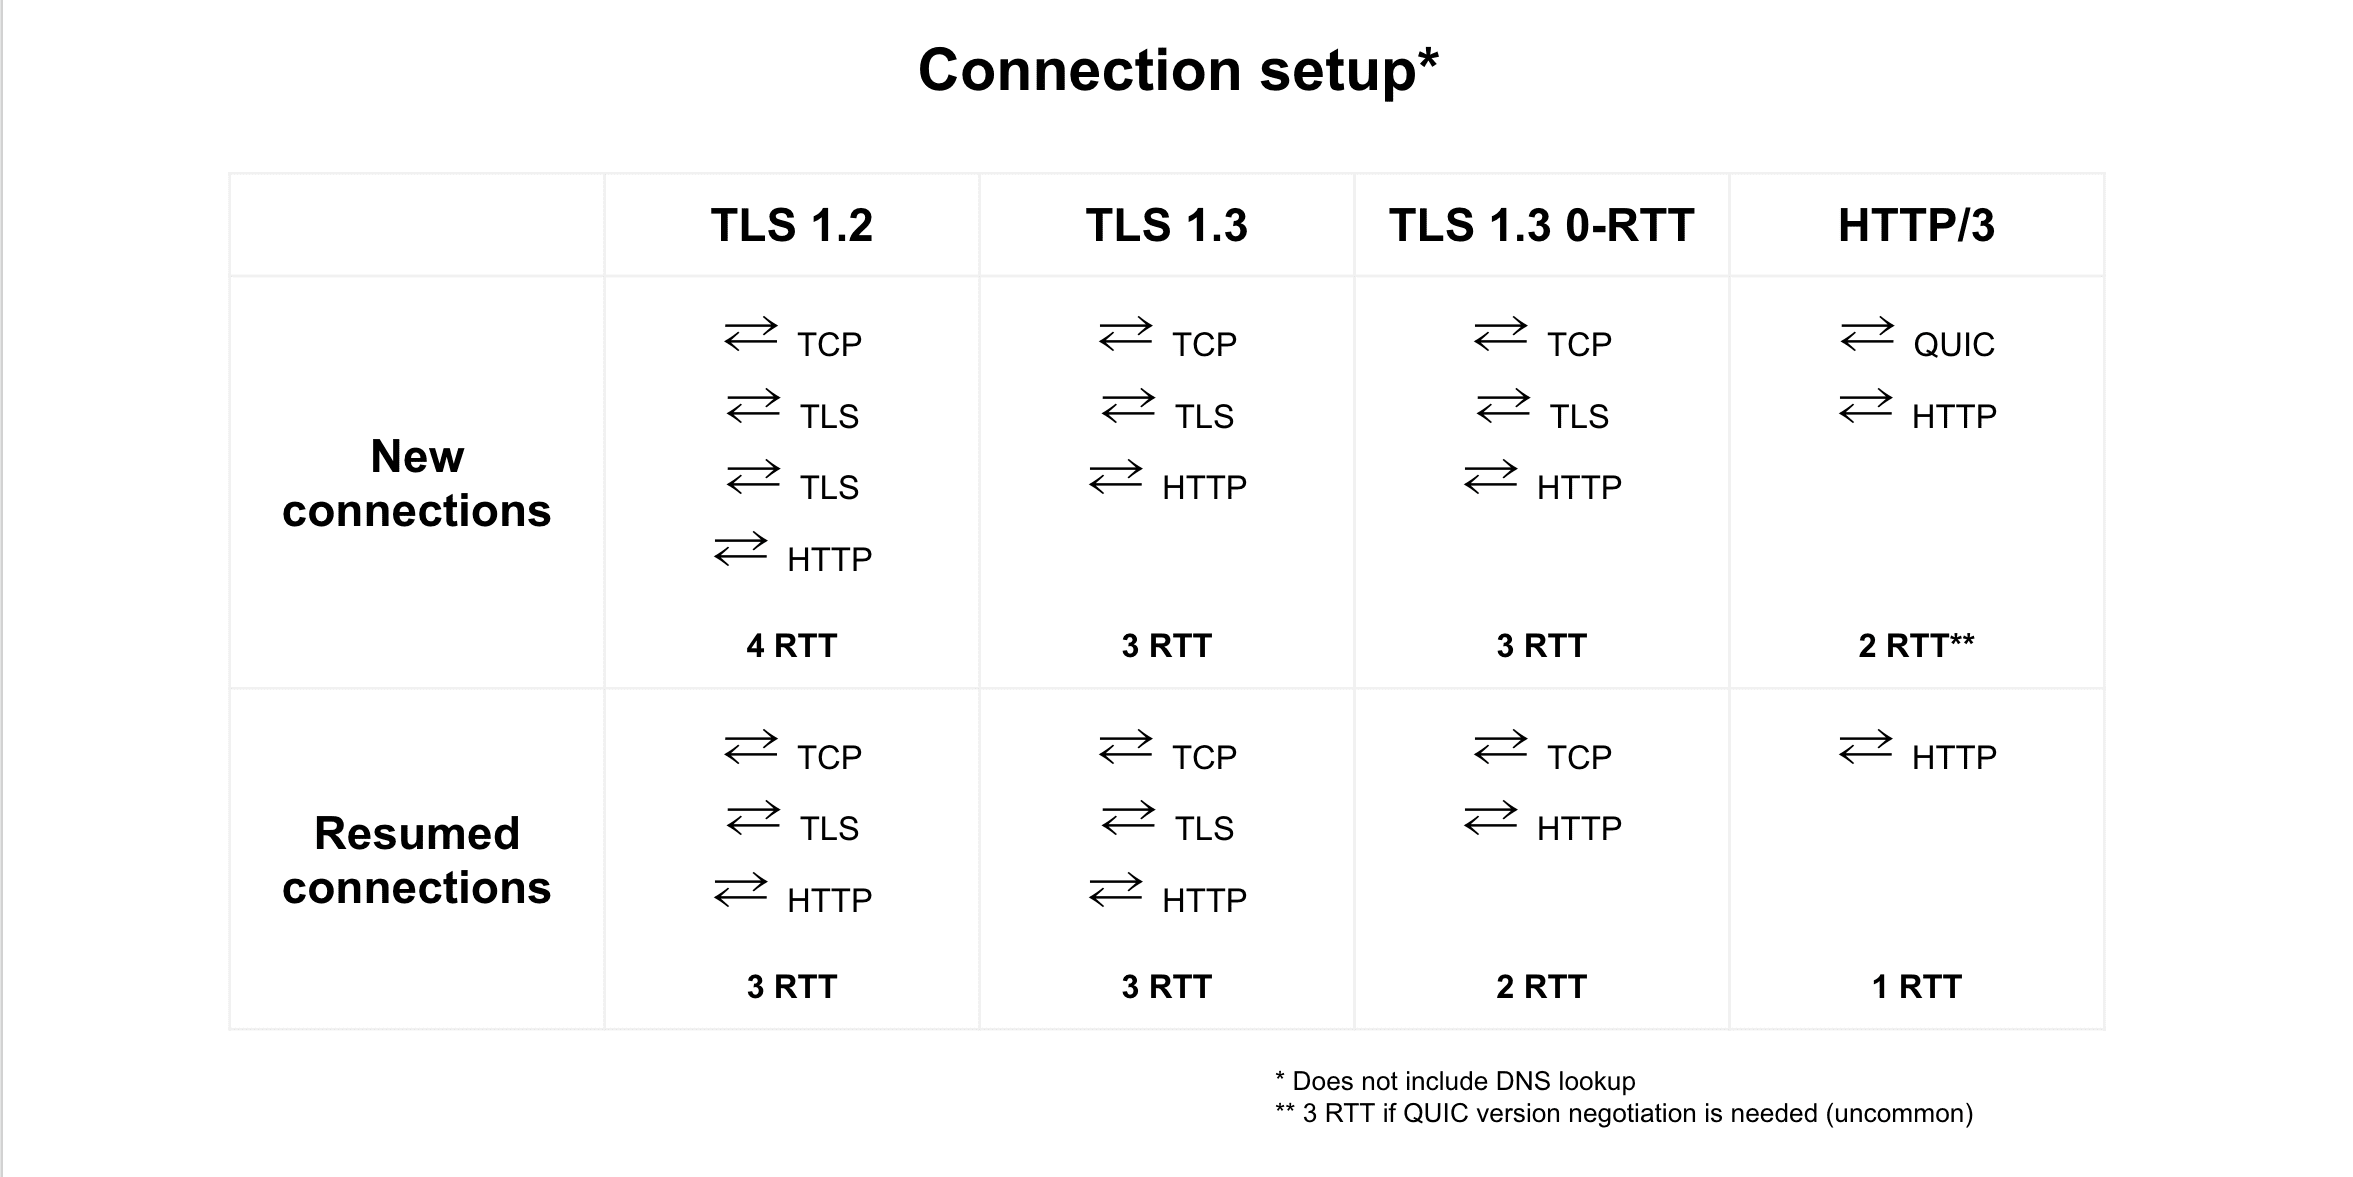 TLS 1.2, TLS 1.3, TLS 1.3 0-RTT, এবং HTTP/3 এর মধ্যে সংযোগ পুনরায় চালু করার তুলনা